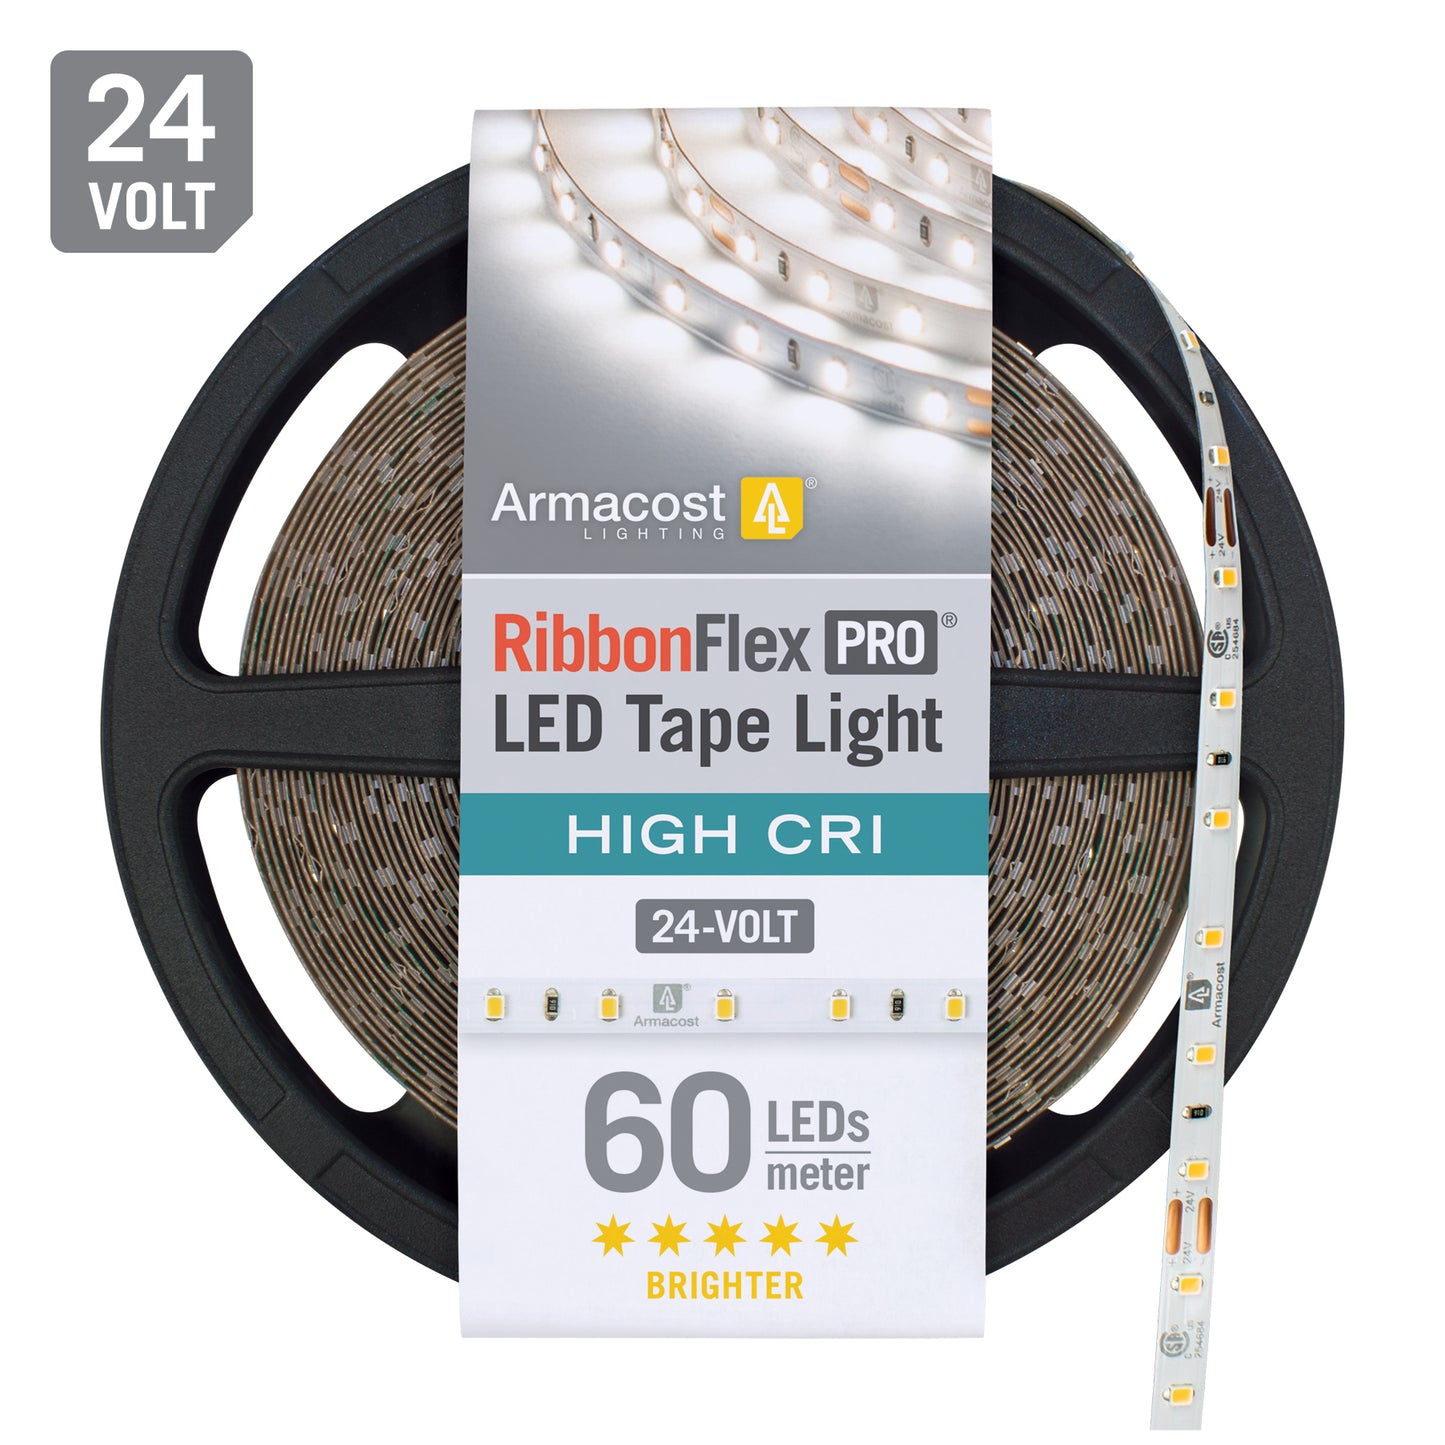 RibbonFlex Pro 24V White High CRI LED Tape Light 60 LED/m